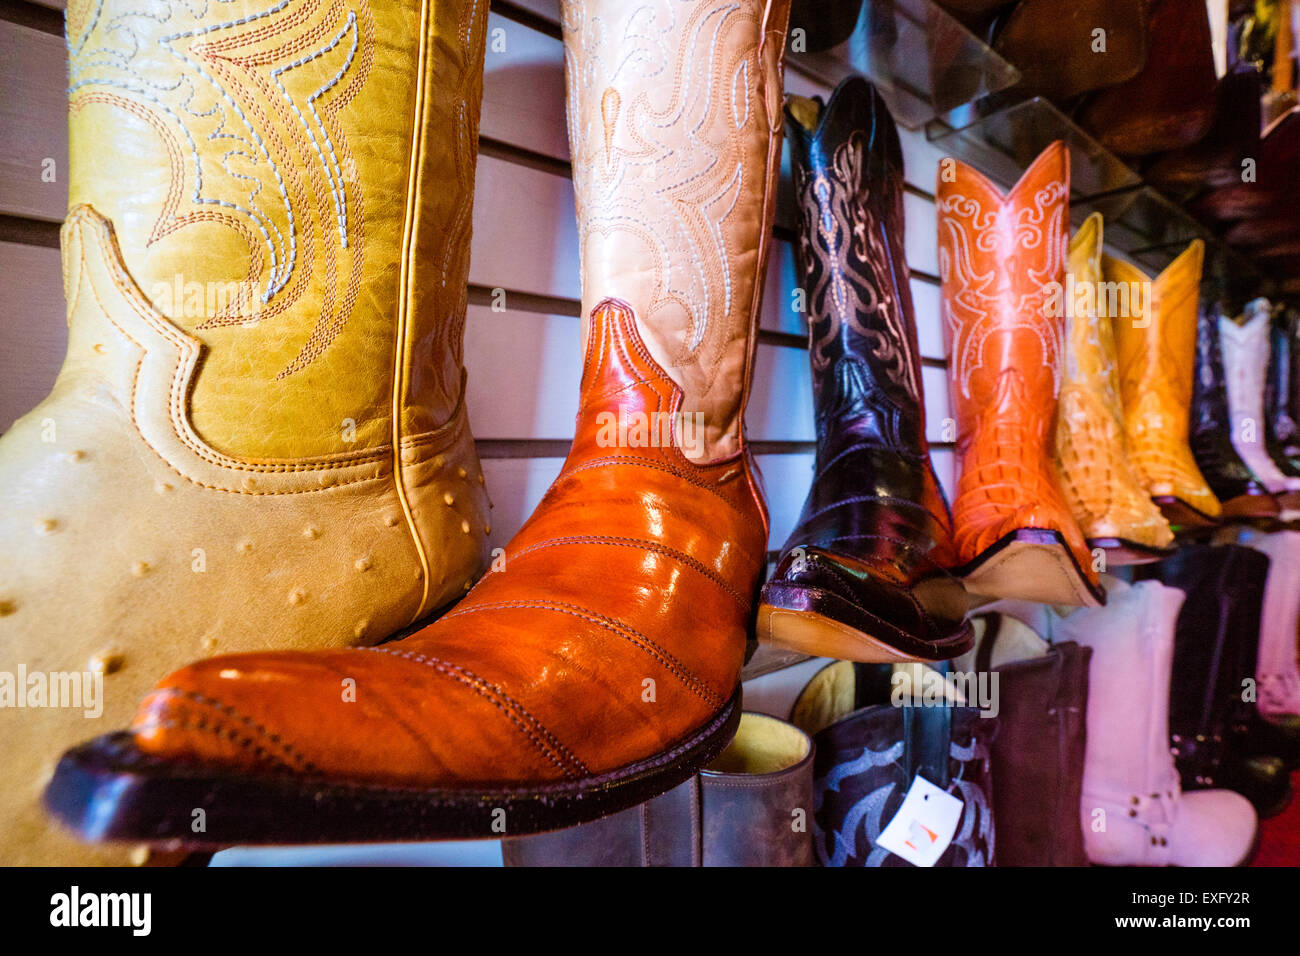 Mexikanische Spitzen Stiefel, Cowboy-Stiefel mit länglichen Zehen auf dem  Display in einem Laden in Oaxaca, Mexiko Stockfotografie - Alamy